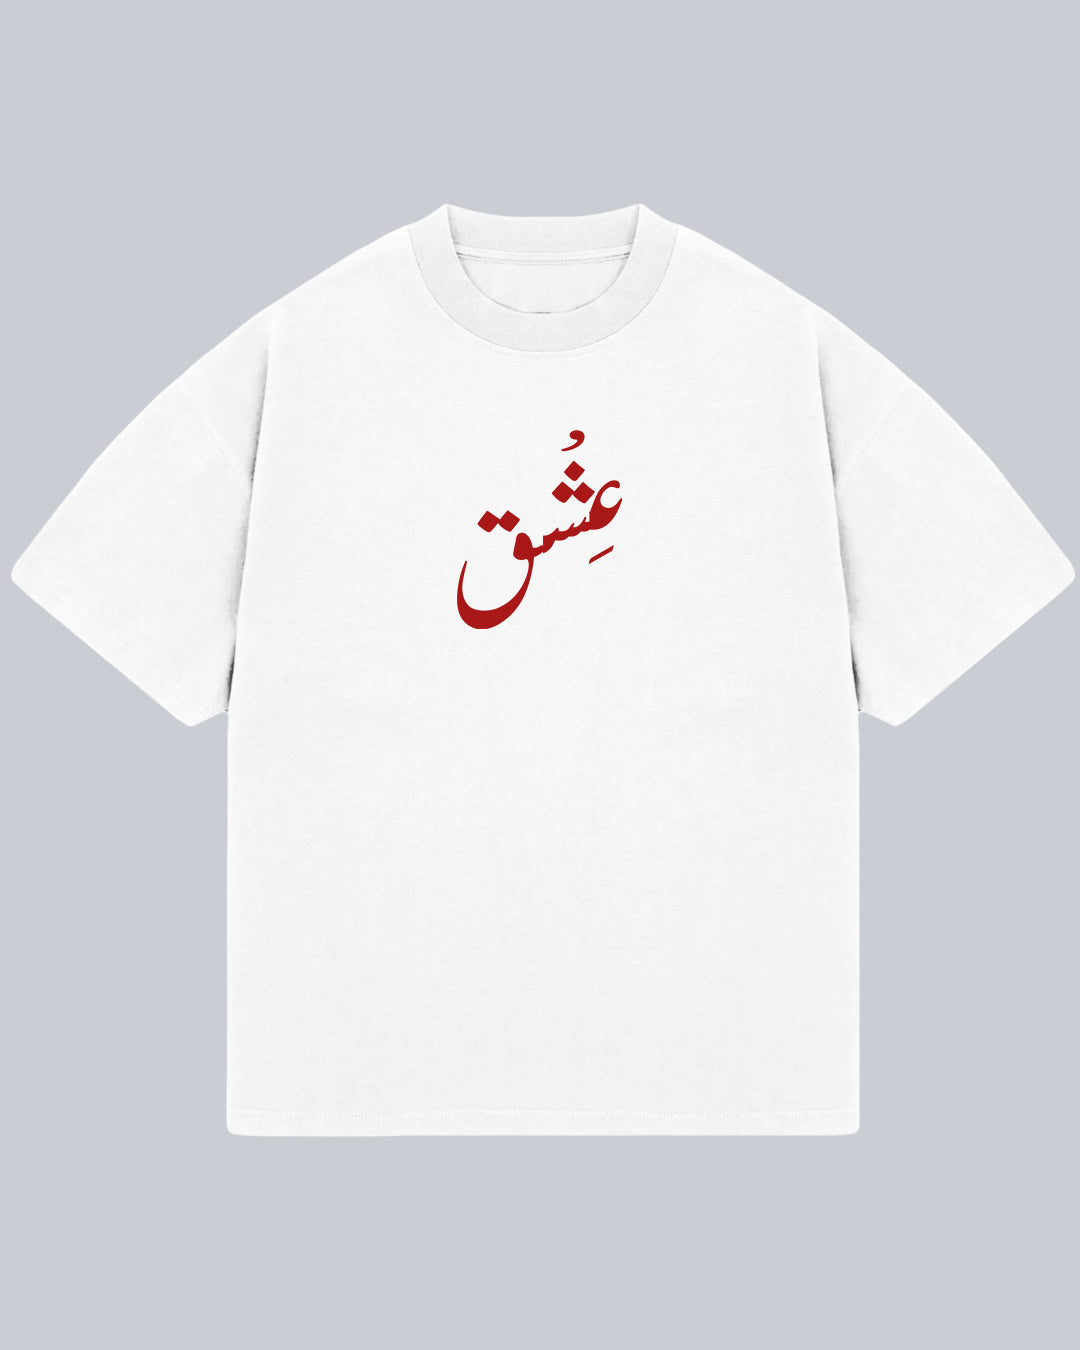 Ishq oversized unisex tshirt, urdu tshirt.